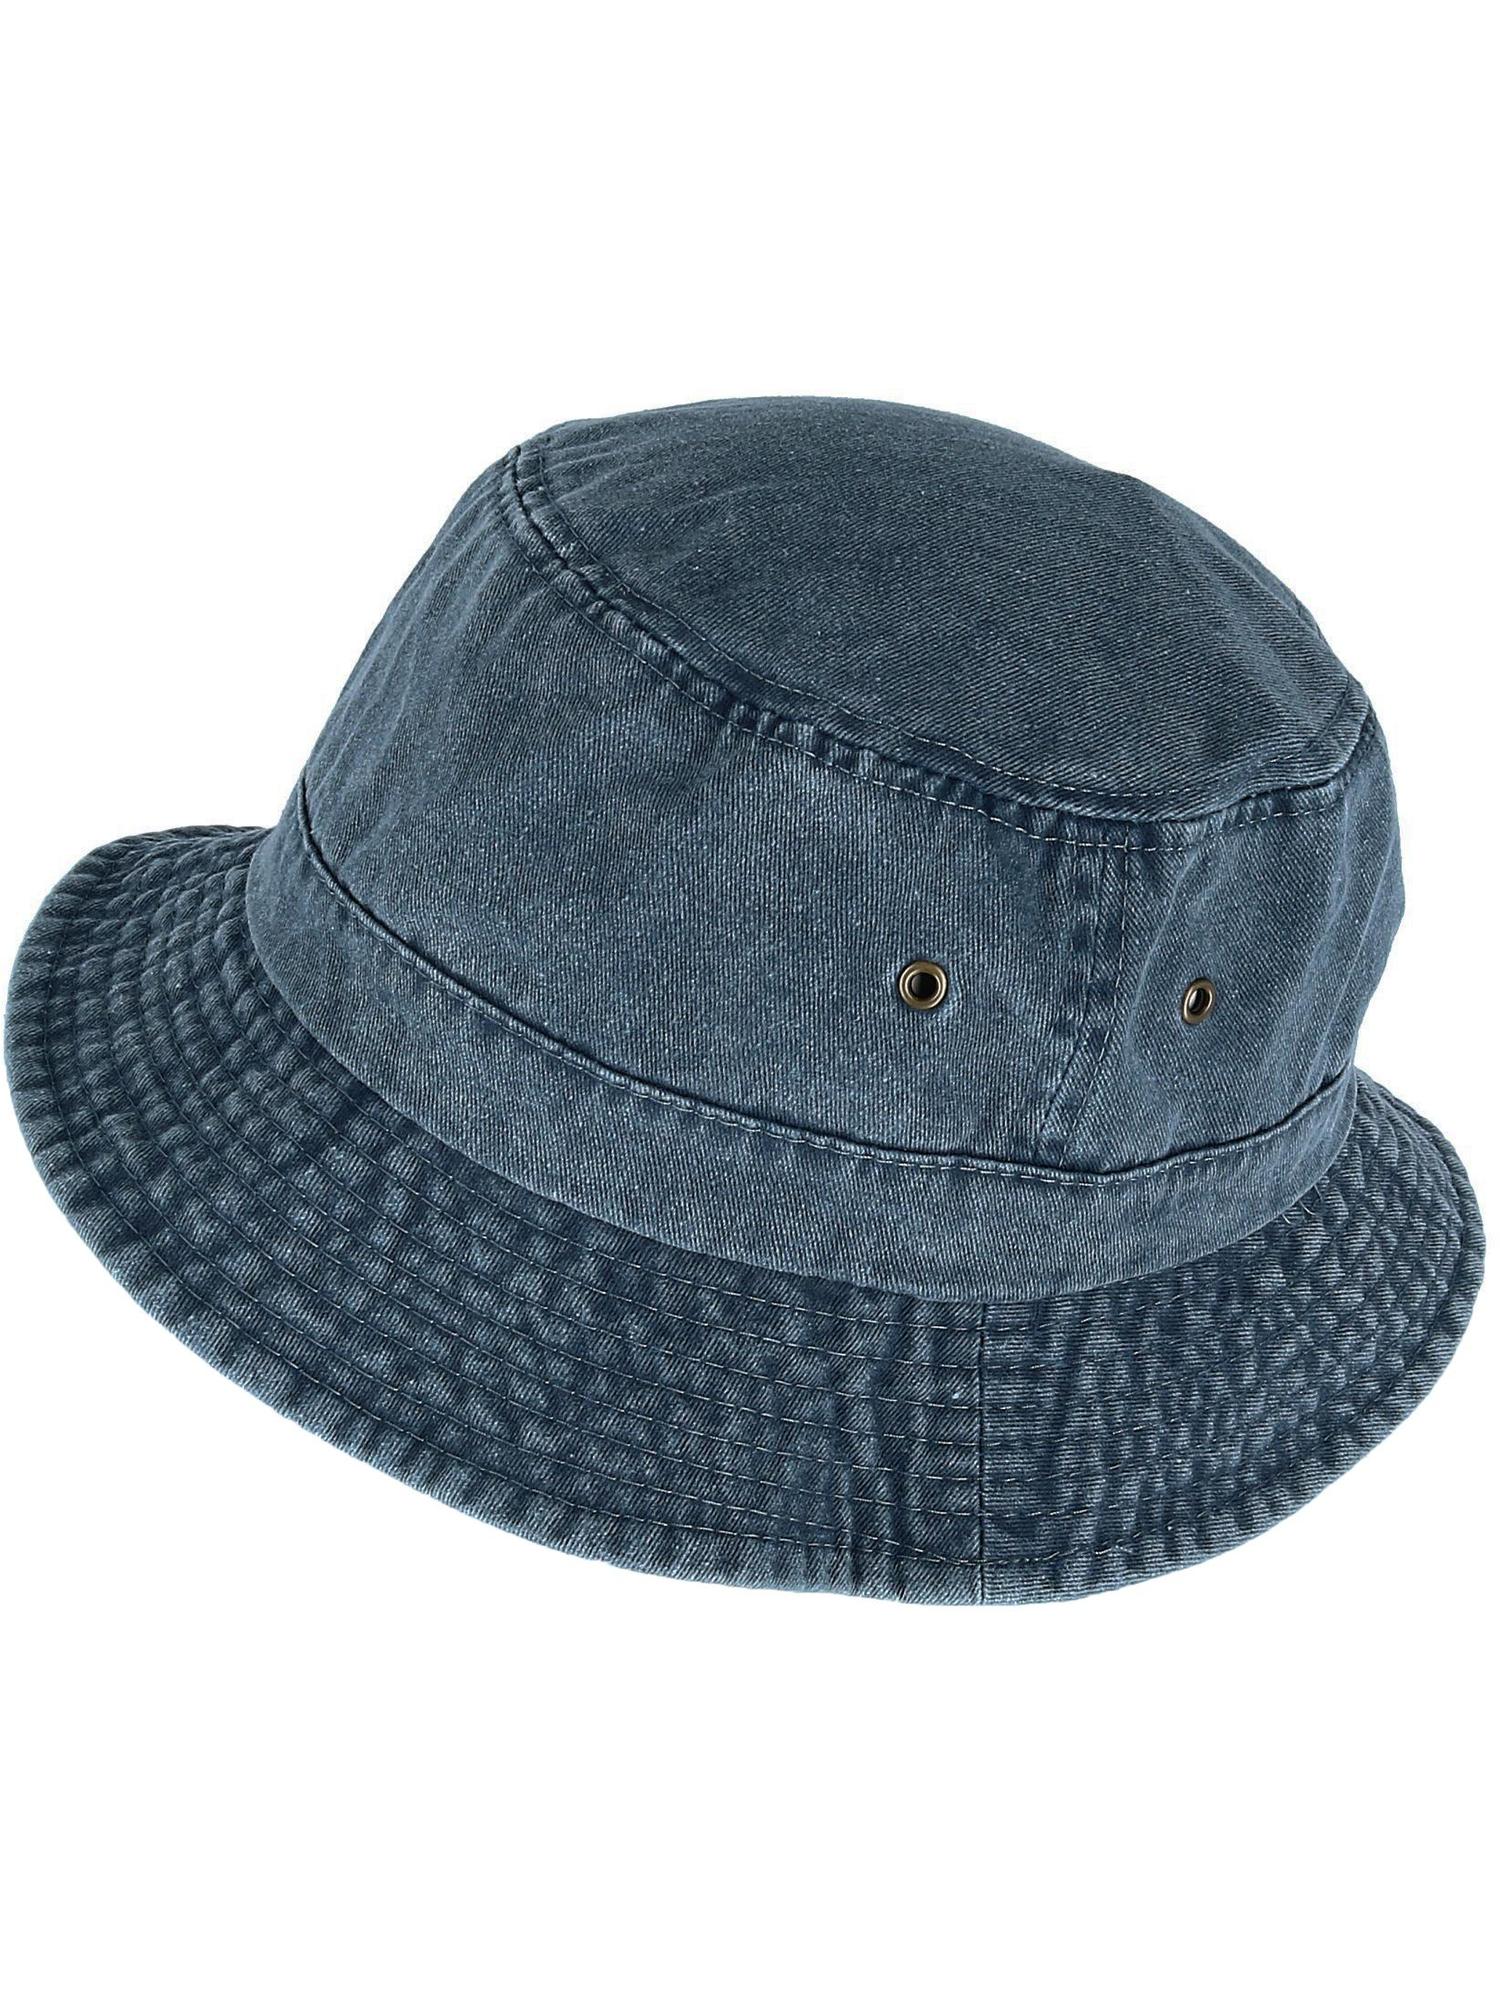 New Ascentix Cotton Packable Bucket Hat